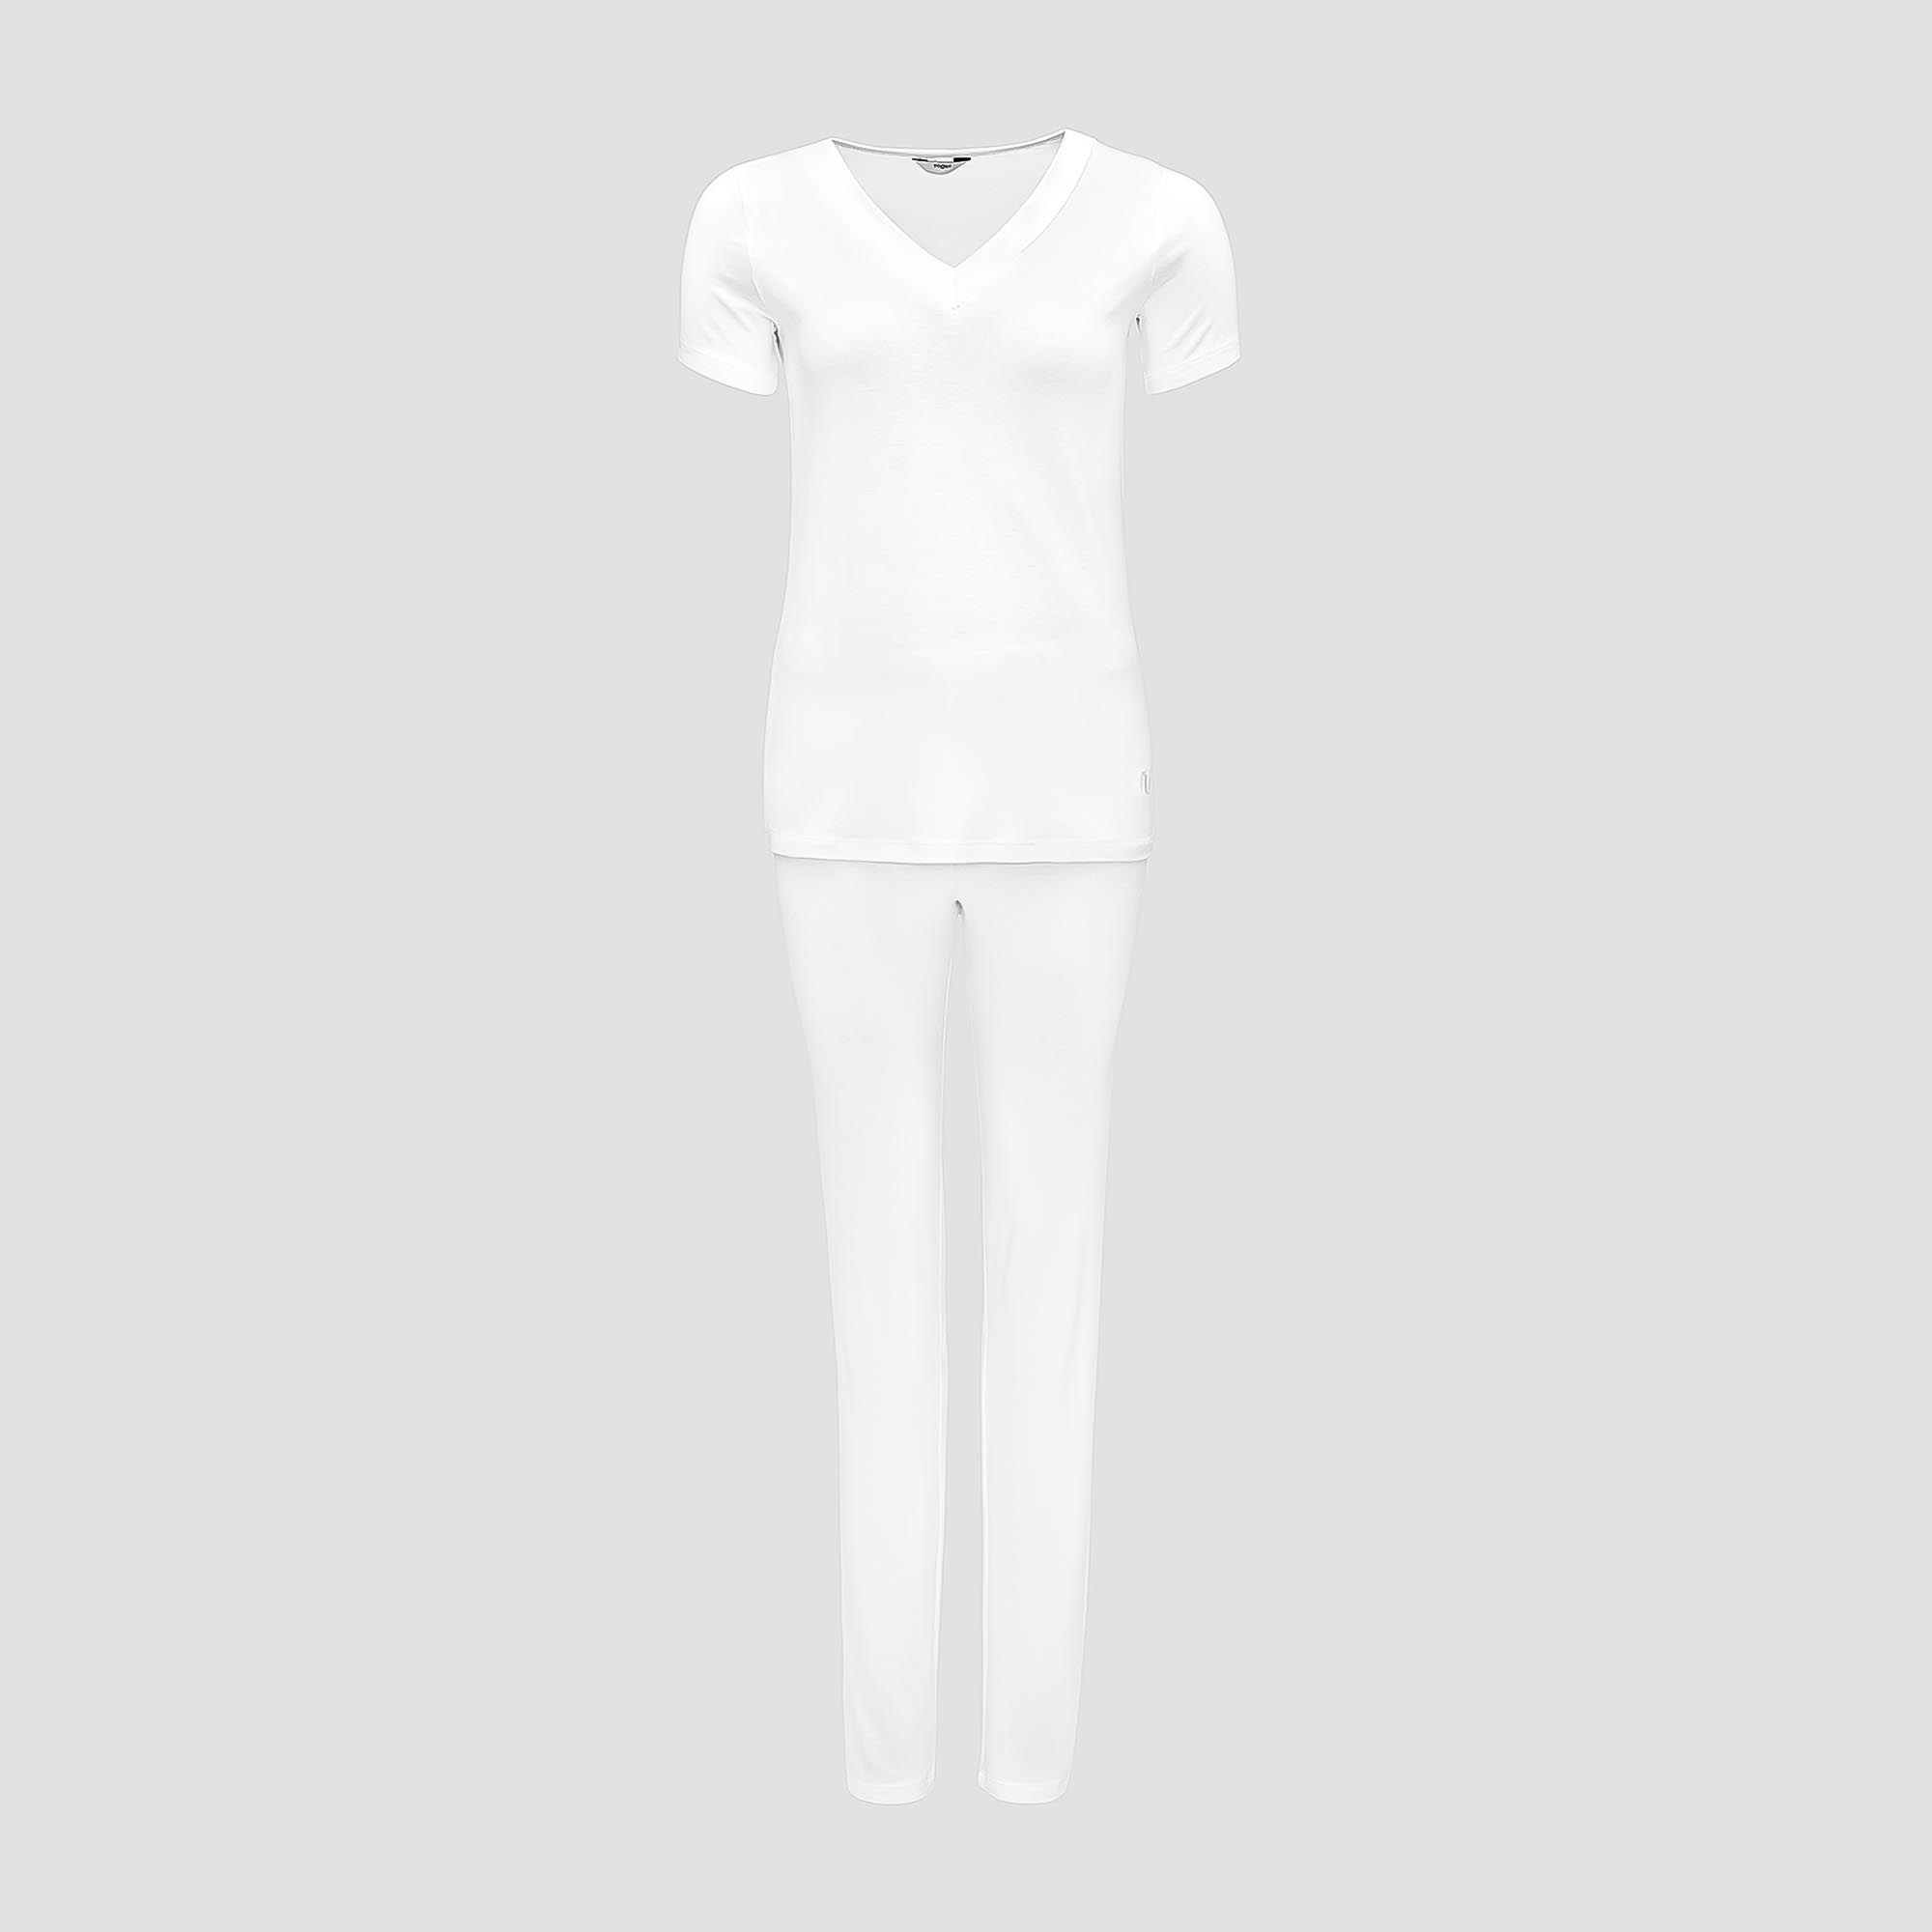 Пижама Togas Ингелла белая женская XXL(52) 2 предмета жен пижама с шортами инь янь белый р 46